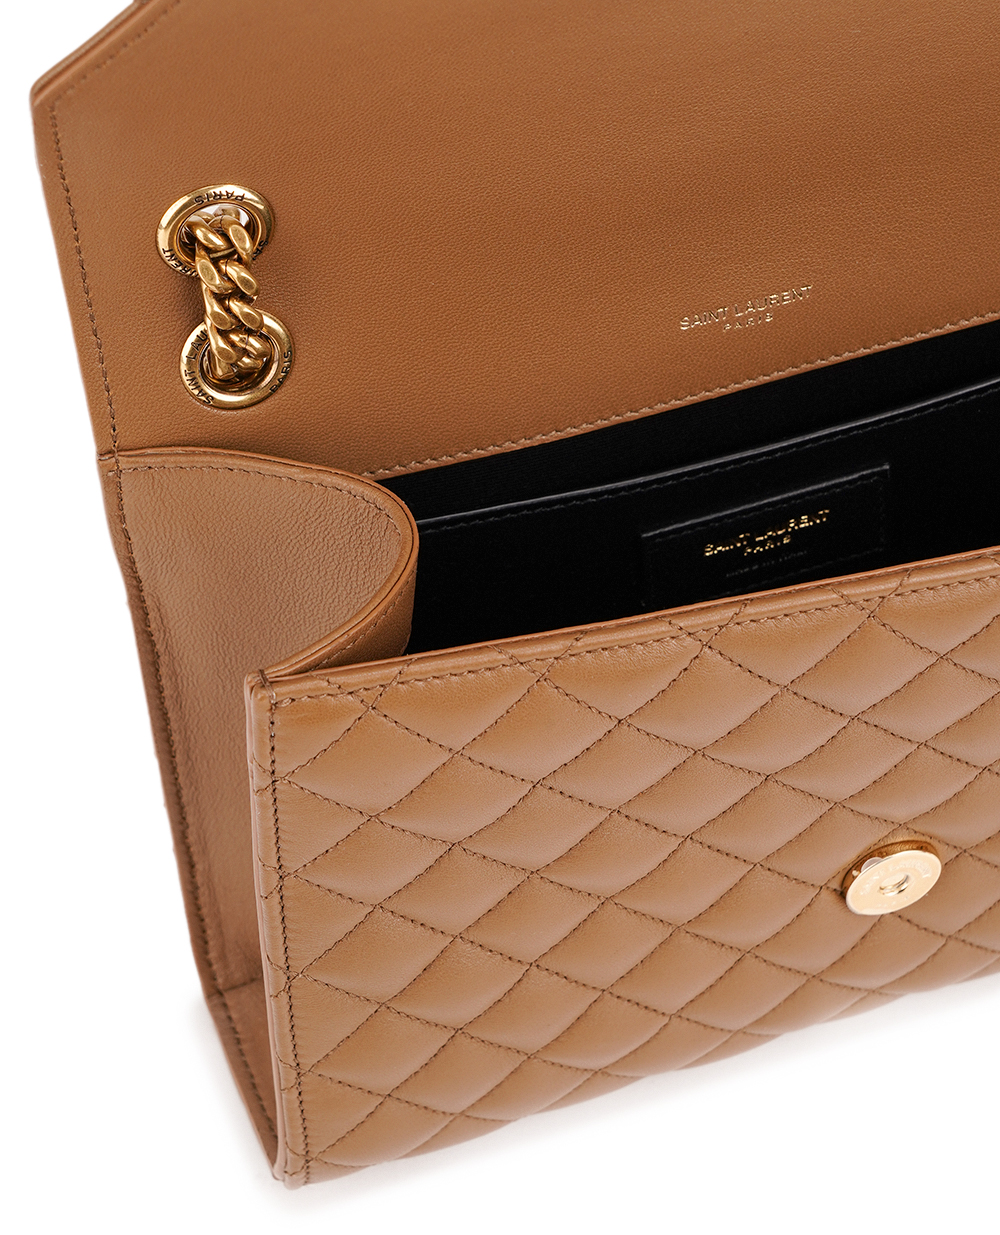 Кожаная сумка Envelope Medium Saint Laurent 600185-AACT7, коричневый цвет • Купить в интернет-магазине Kameron